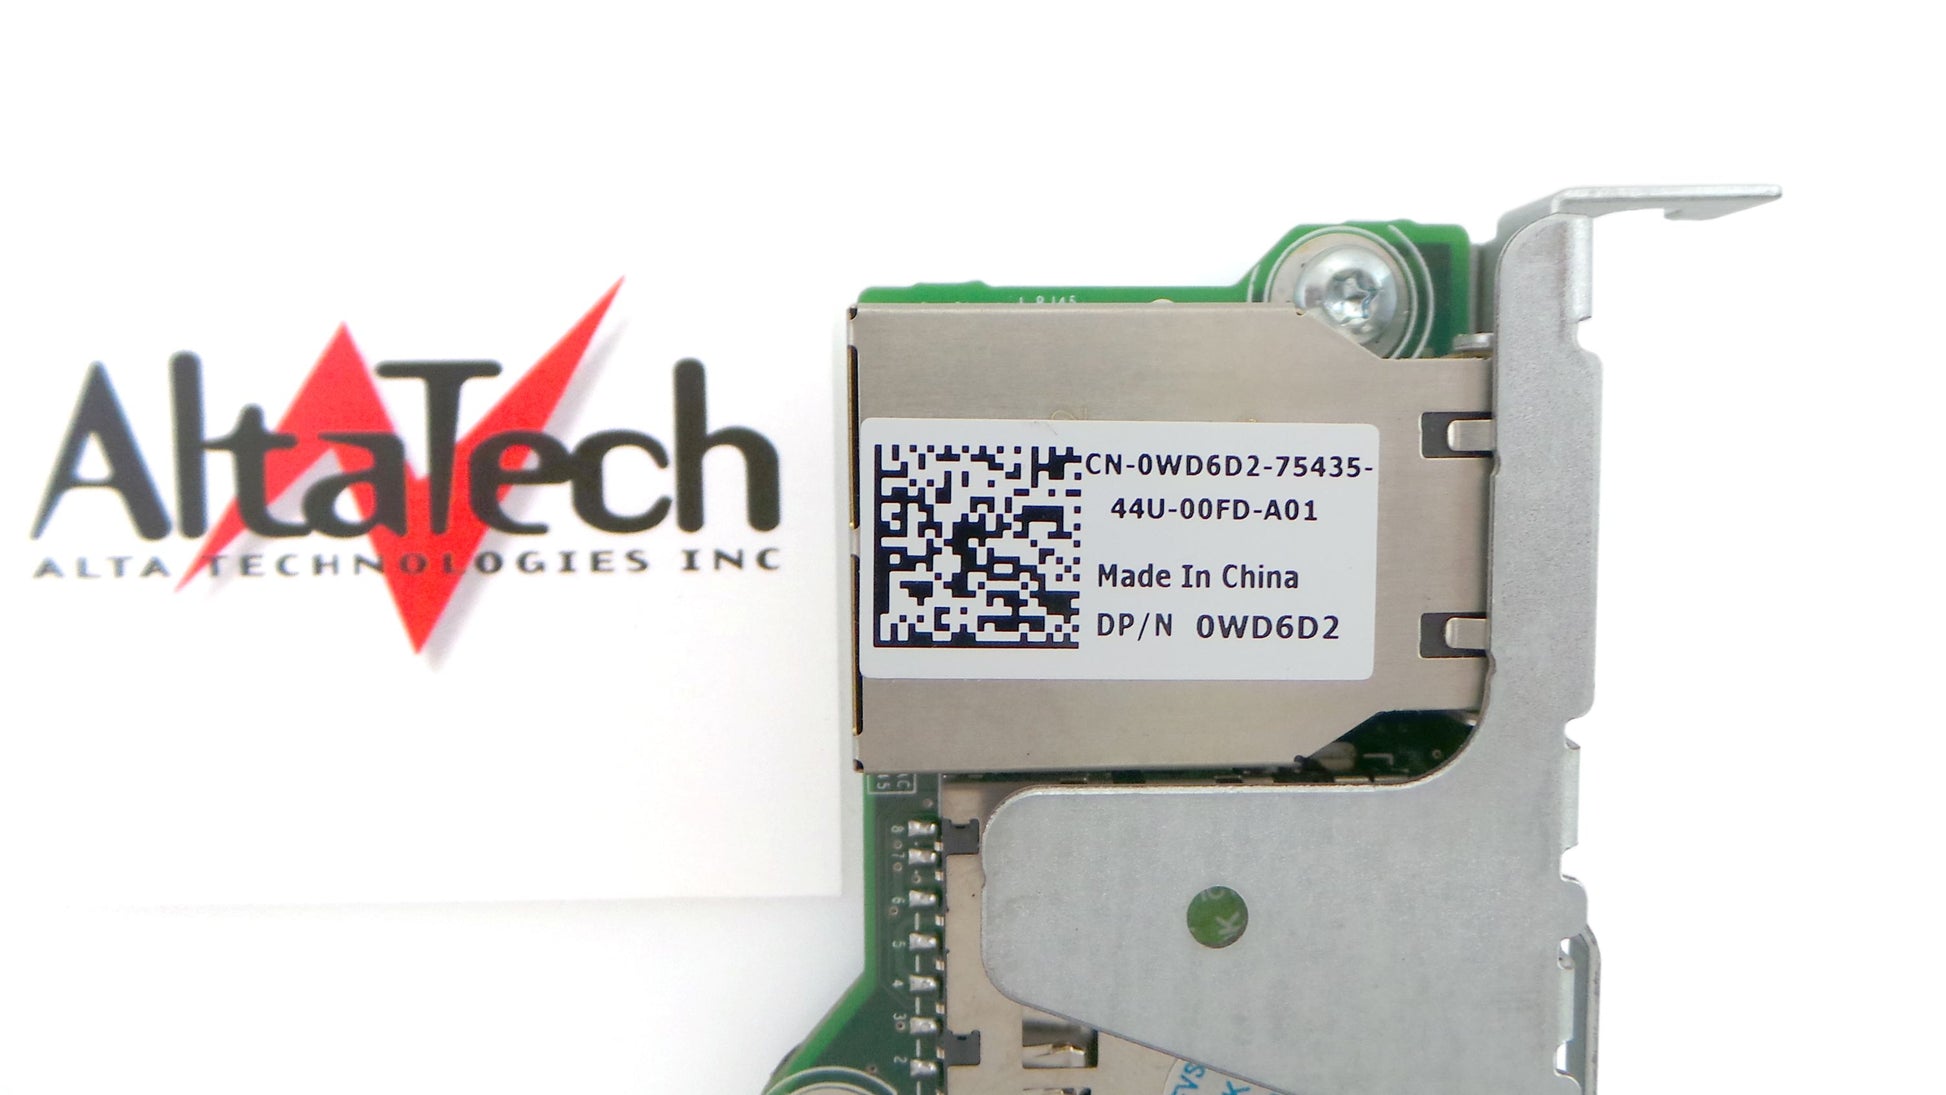 Dell 02827M R320/R420/R520 iDRAC7 Remote Access Card, Used